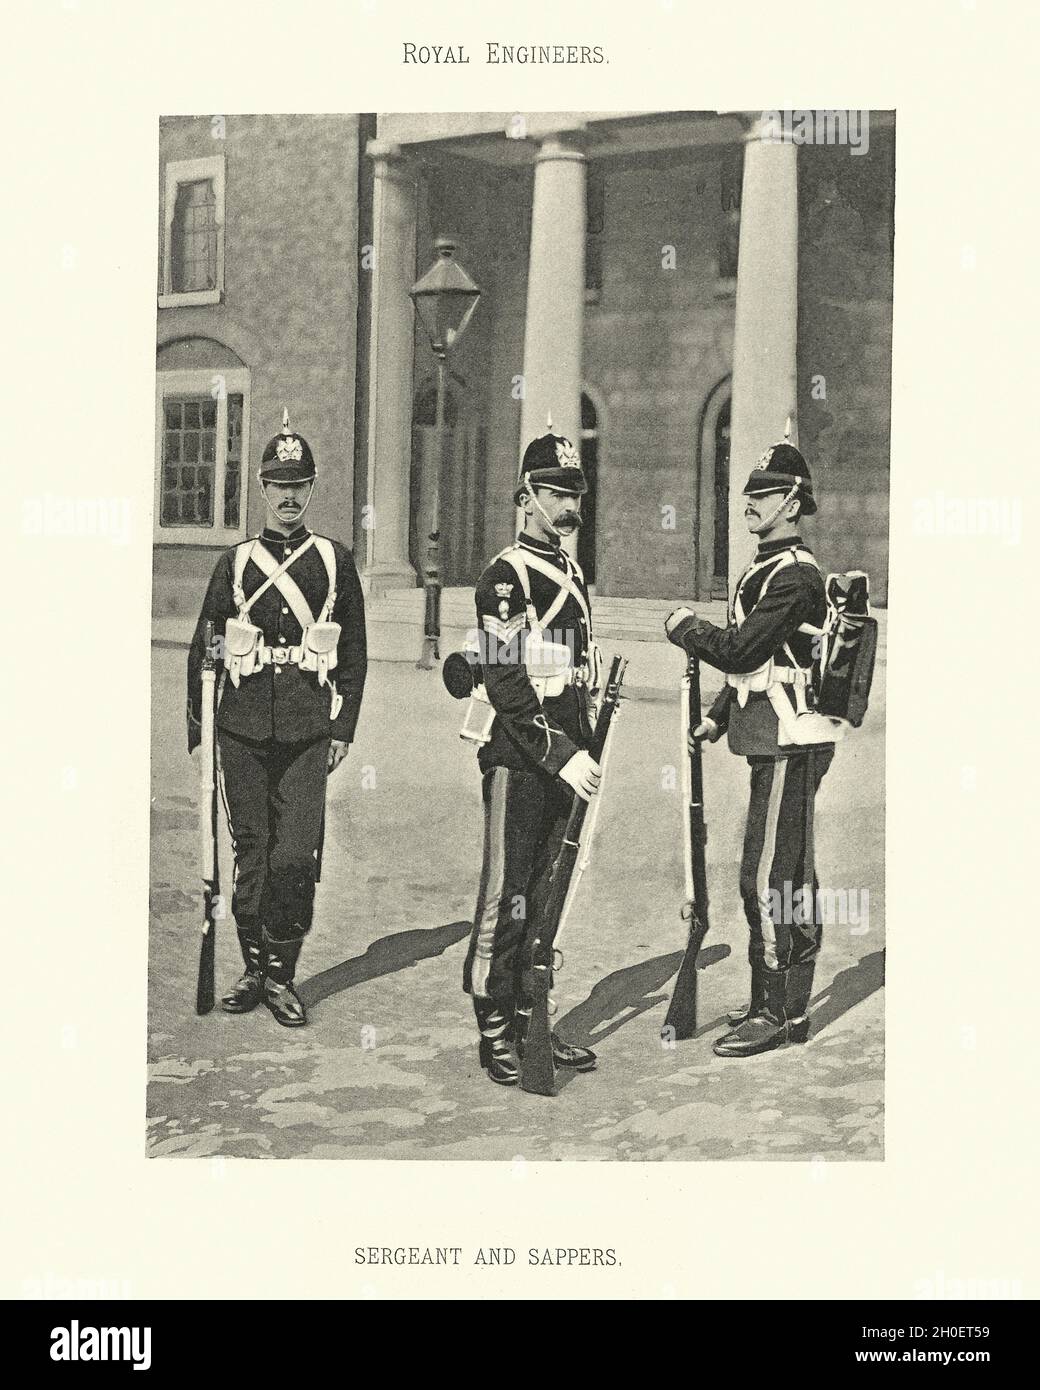 Foto d'epoca di Sergente e sappers, ingegneri reali dell'esercito britannico, uniforme militare, 19 ° secolo vittoriano Foto Stock